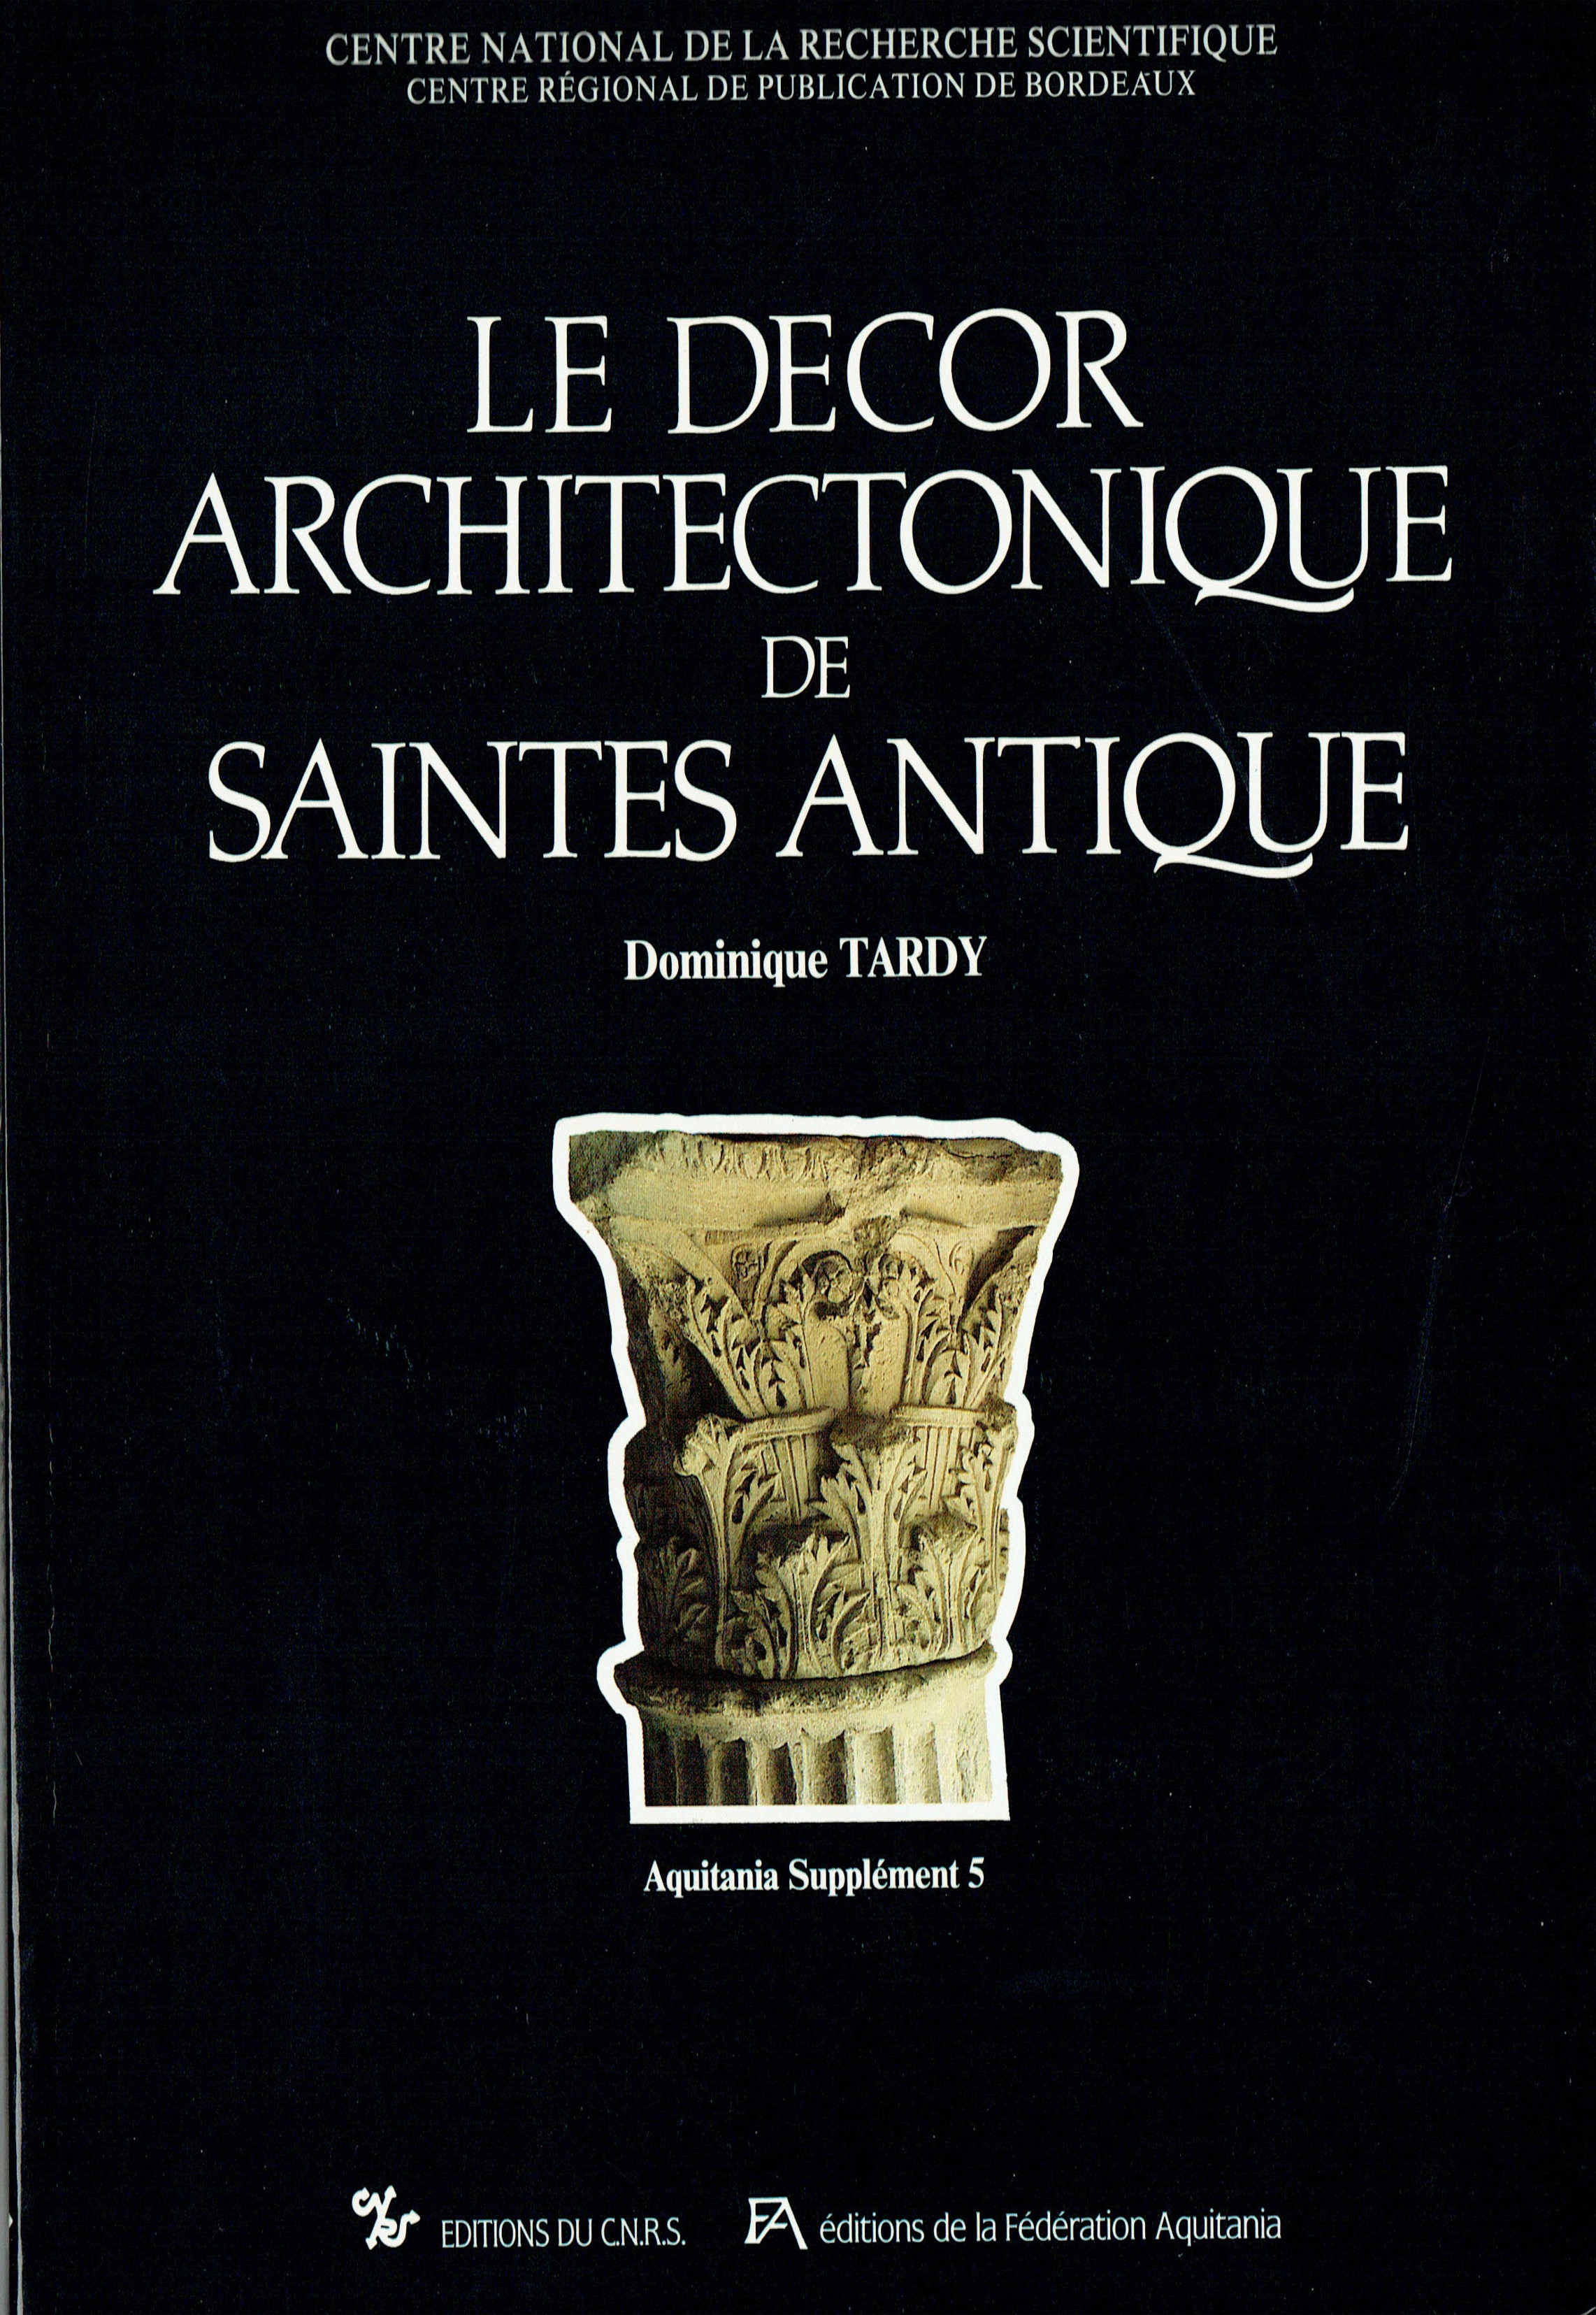 Le décor architectonique de Saintes antique – Tome 1